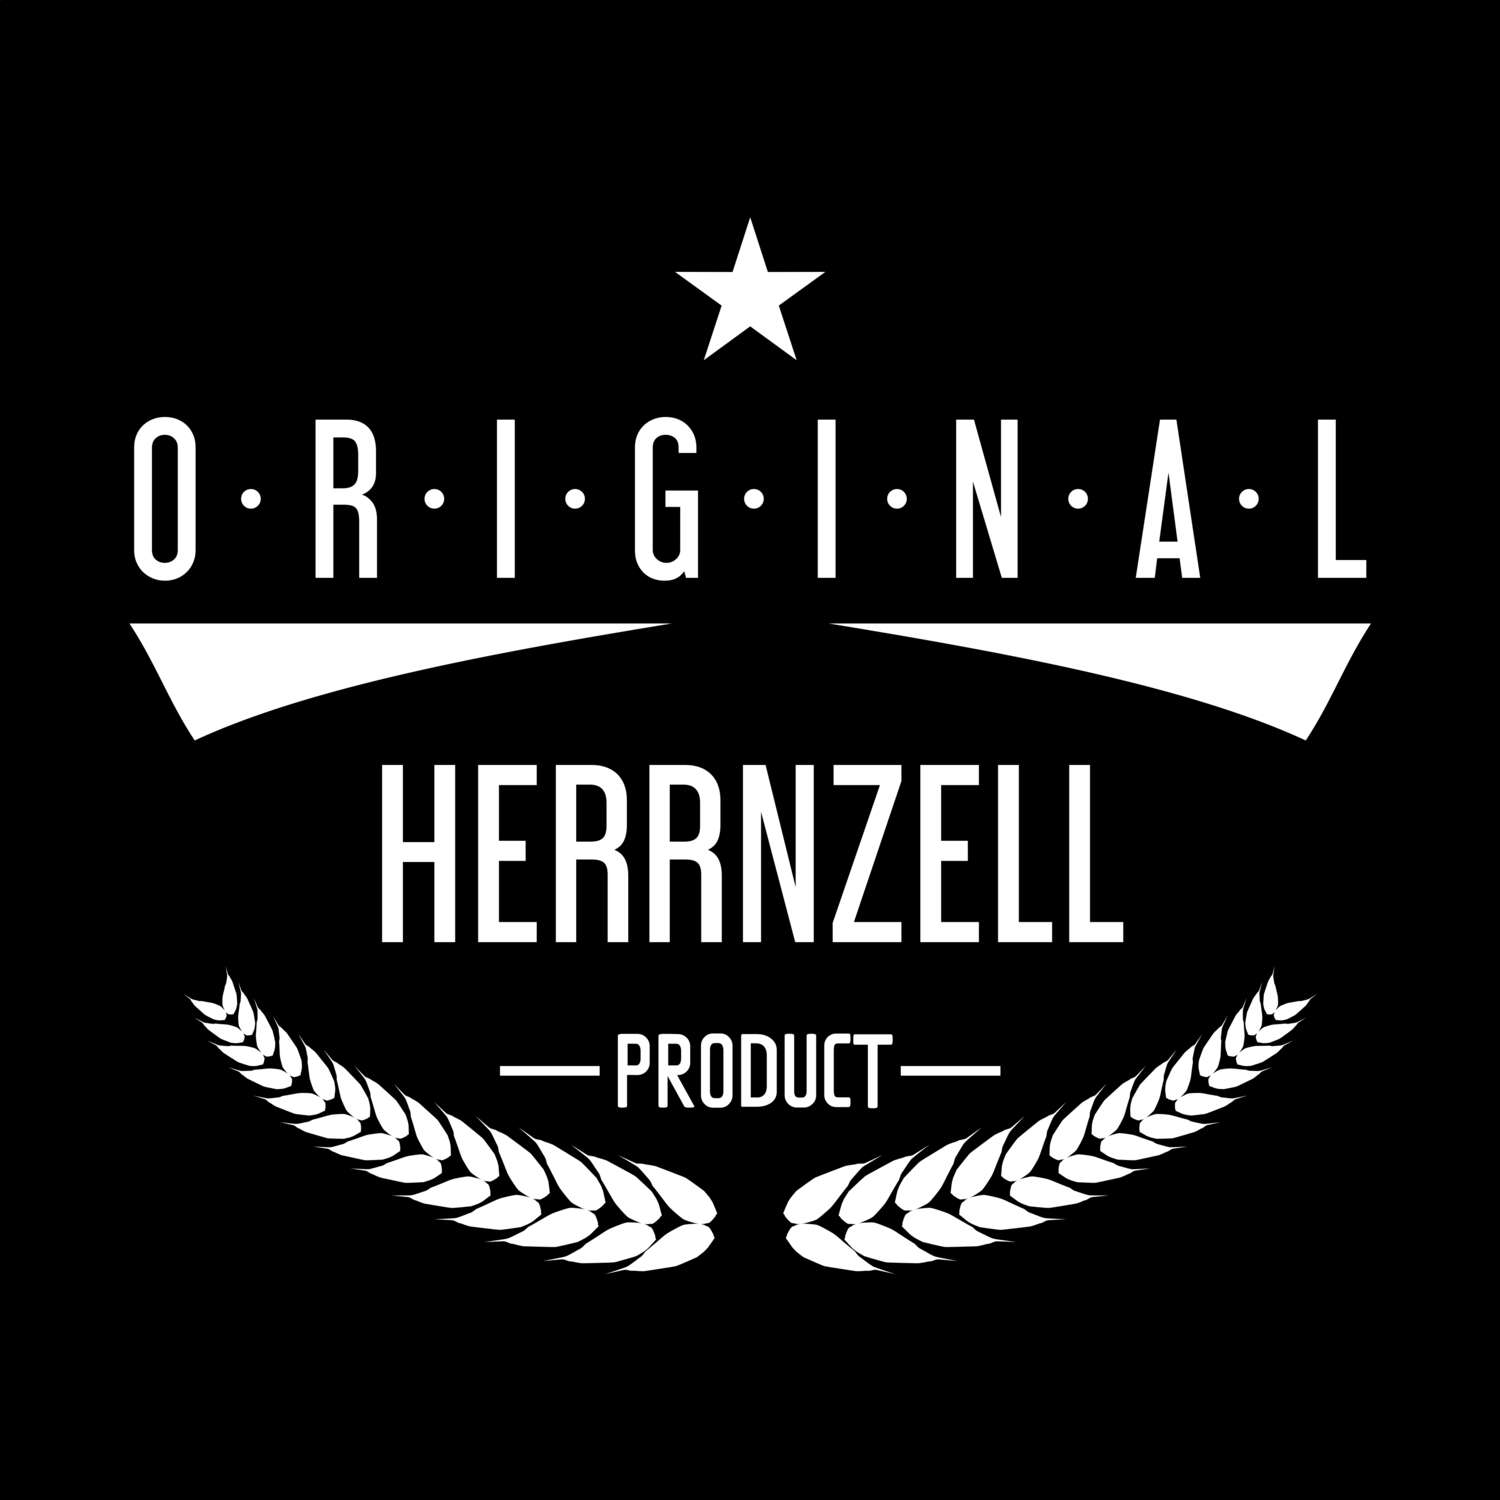 Herrnzell T-Shirt »Original Product«